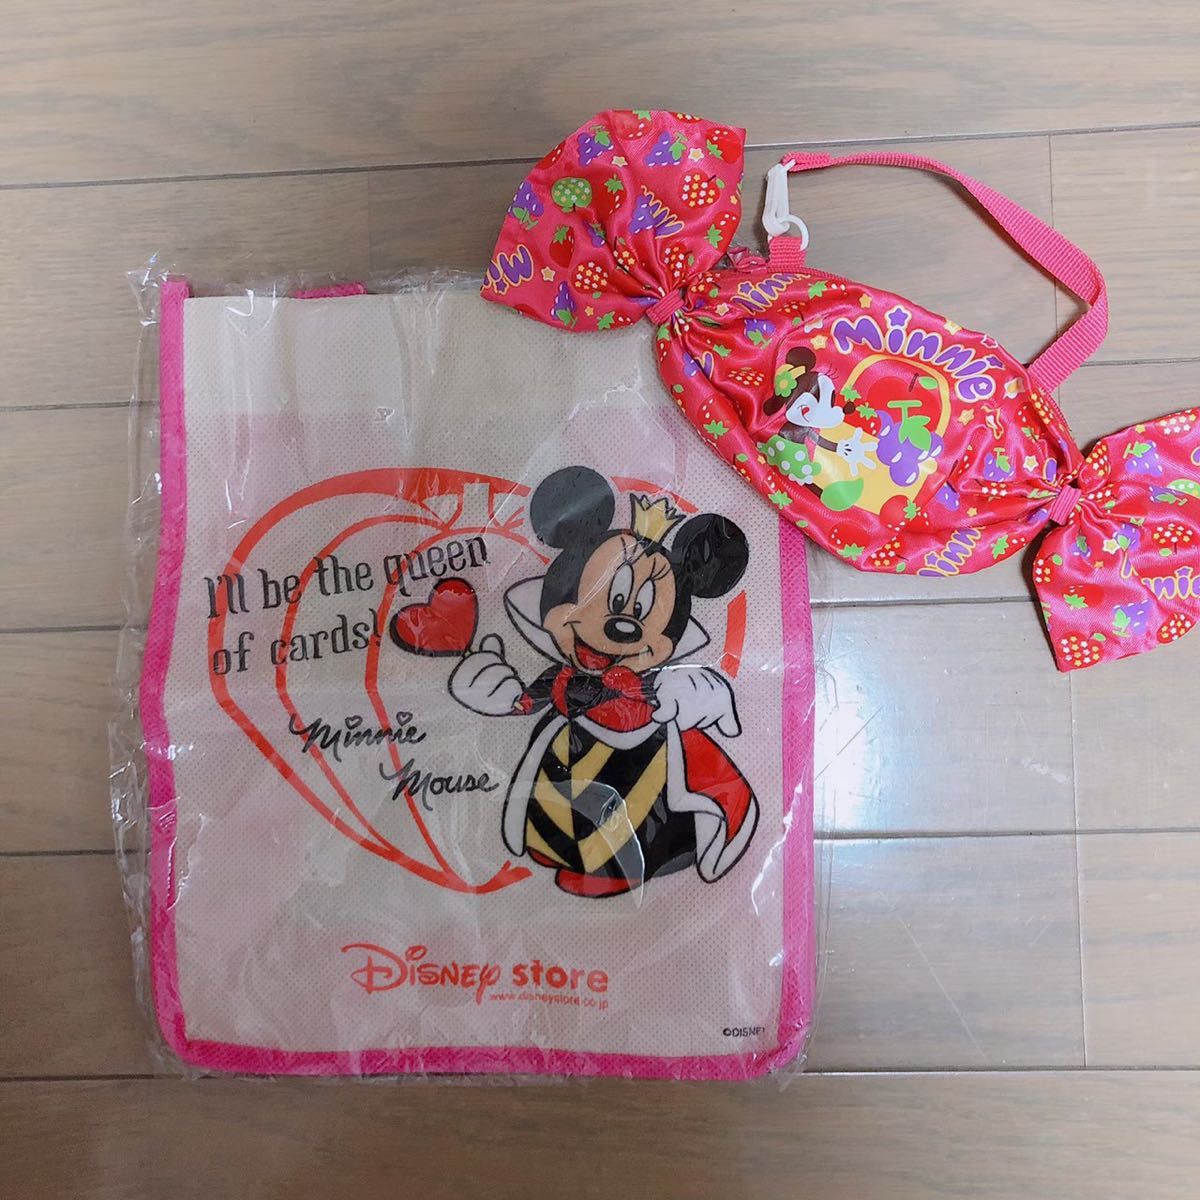 【未使用】ミニーマウス ハロウィン バッグ キャンディーポーチ エコバッグ トートバッグ ディズニー Disney 非売品 レア 